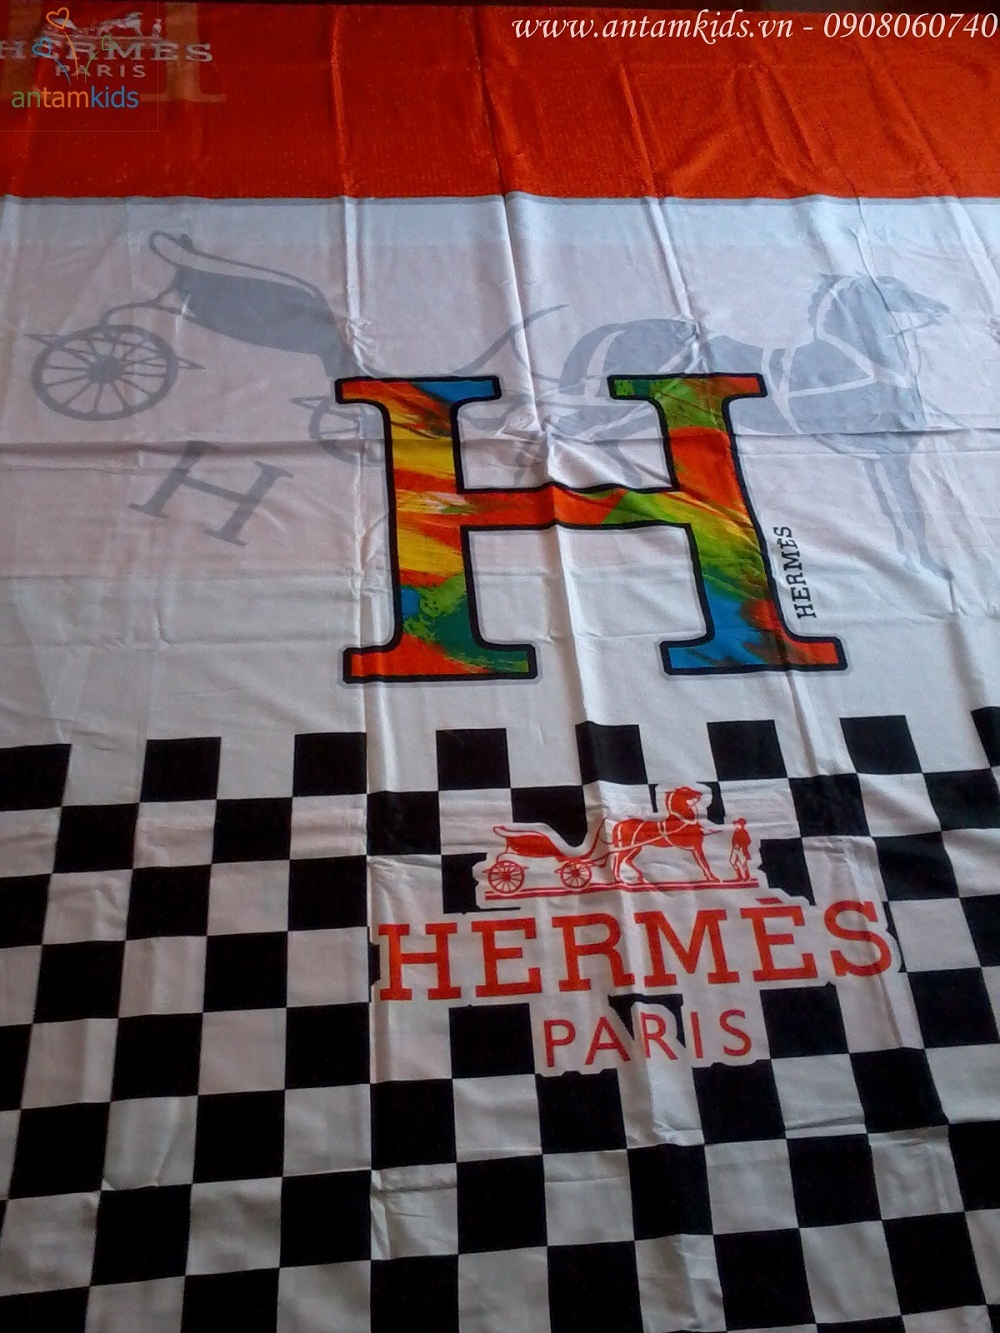 Chăn ga gối mền drap thương hiệu hàng hiệu Hermes Paris sang trọng quyến rũ & cá tính sành điệu - AnTamKids.vn